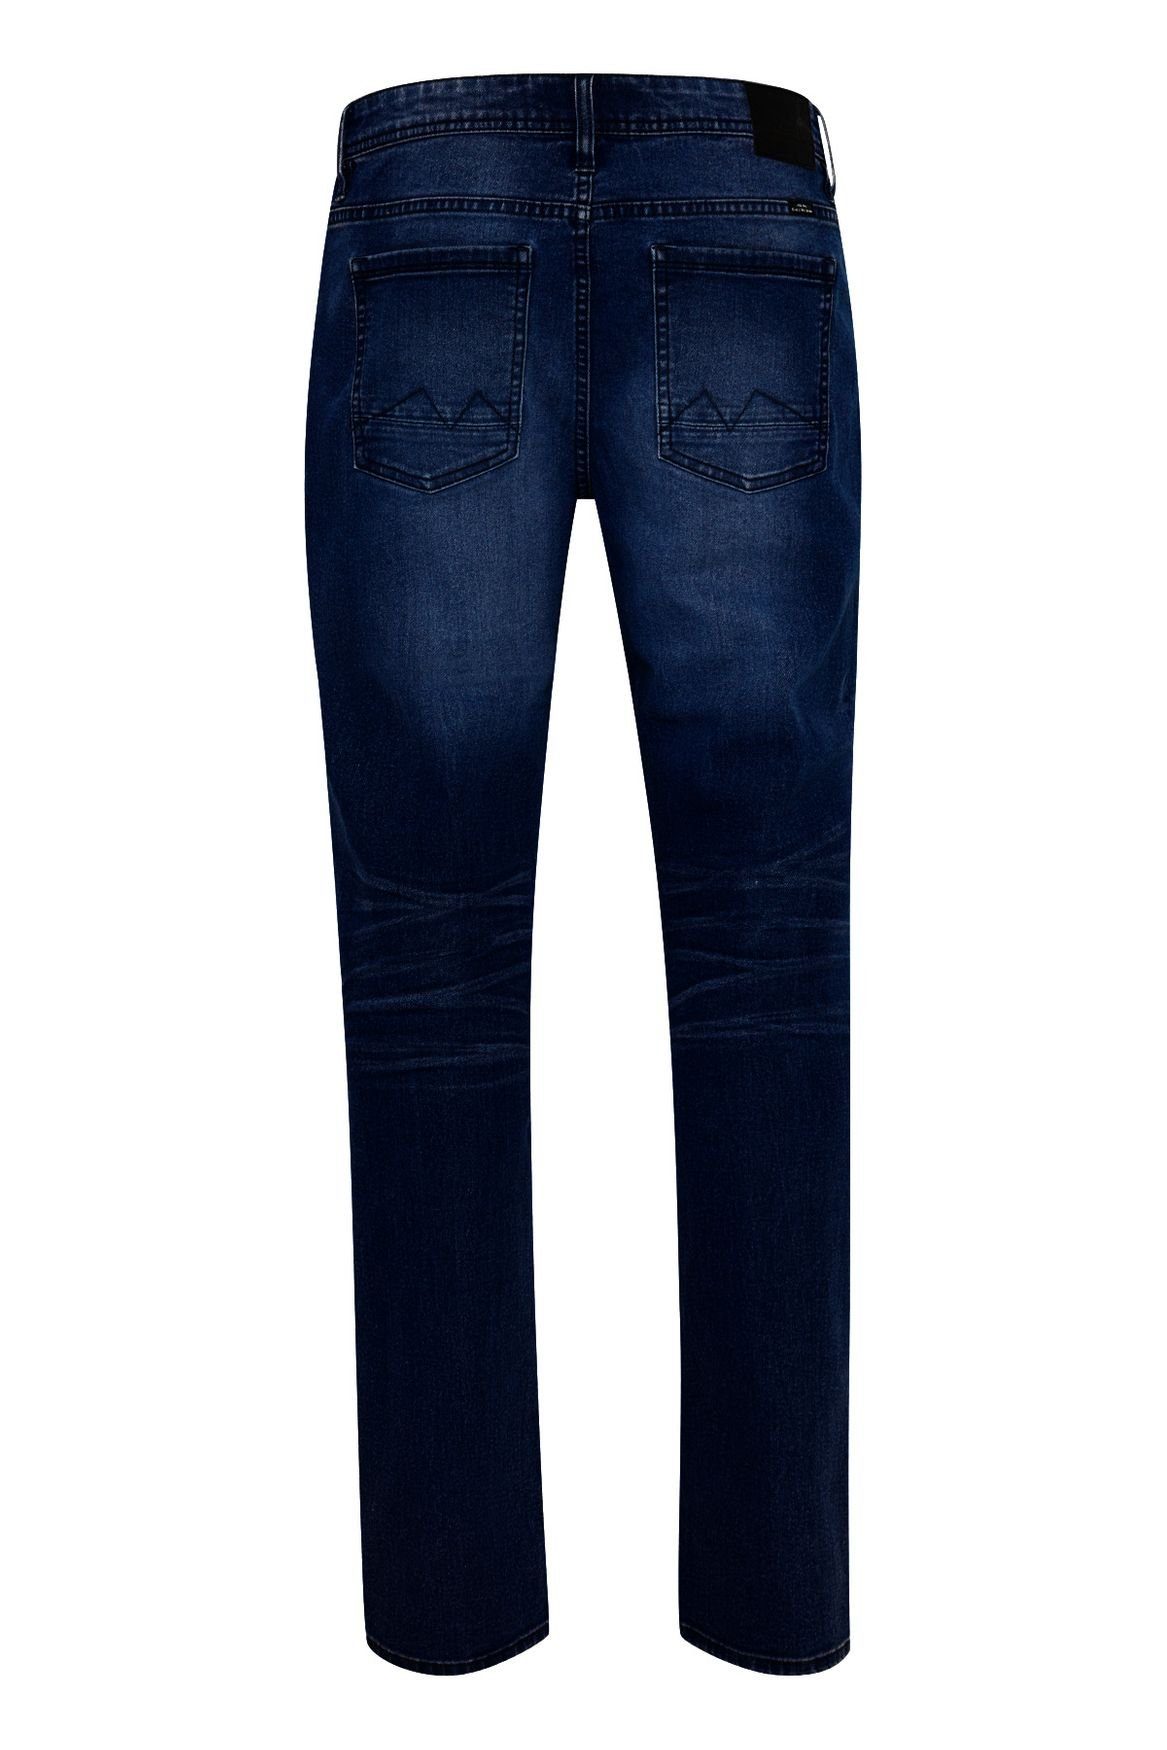 in Stoned TWISTER Slim Hose Washed Blend Jeans Fit Dunkelblau 4515 Slim-fit-Jeans Basic FIT Denim